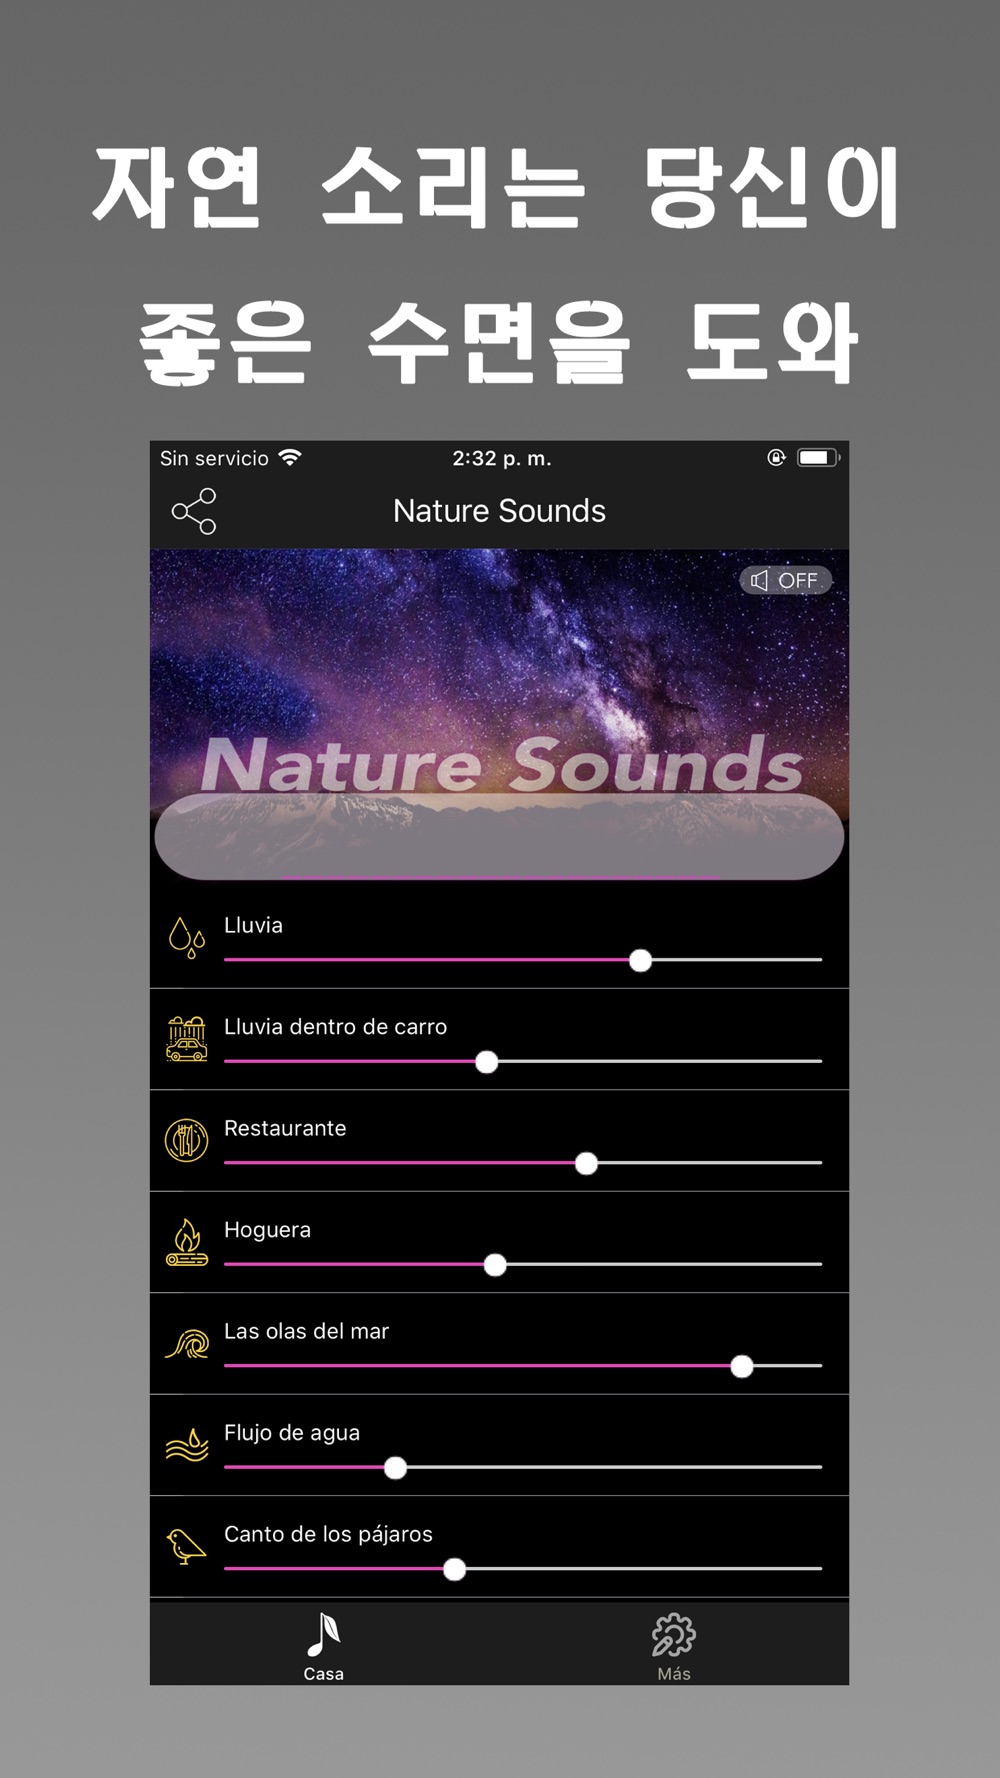 Tuner Radio Plus Free Download App for iPhone - STEPrimo.com